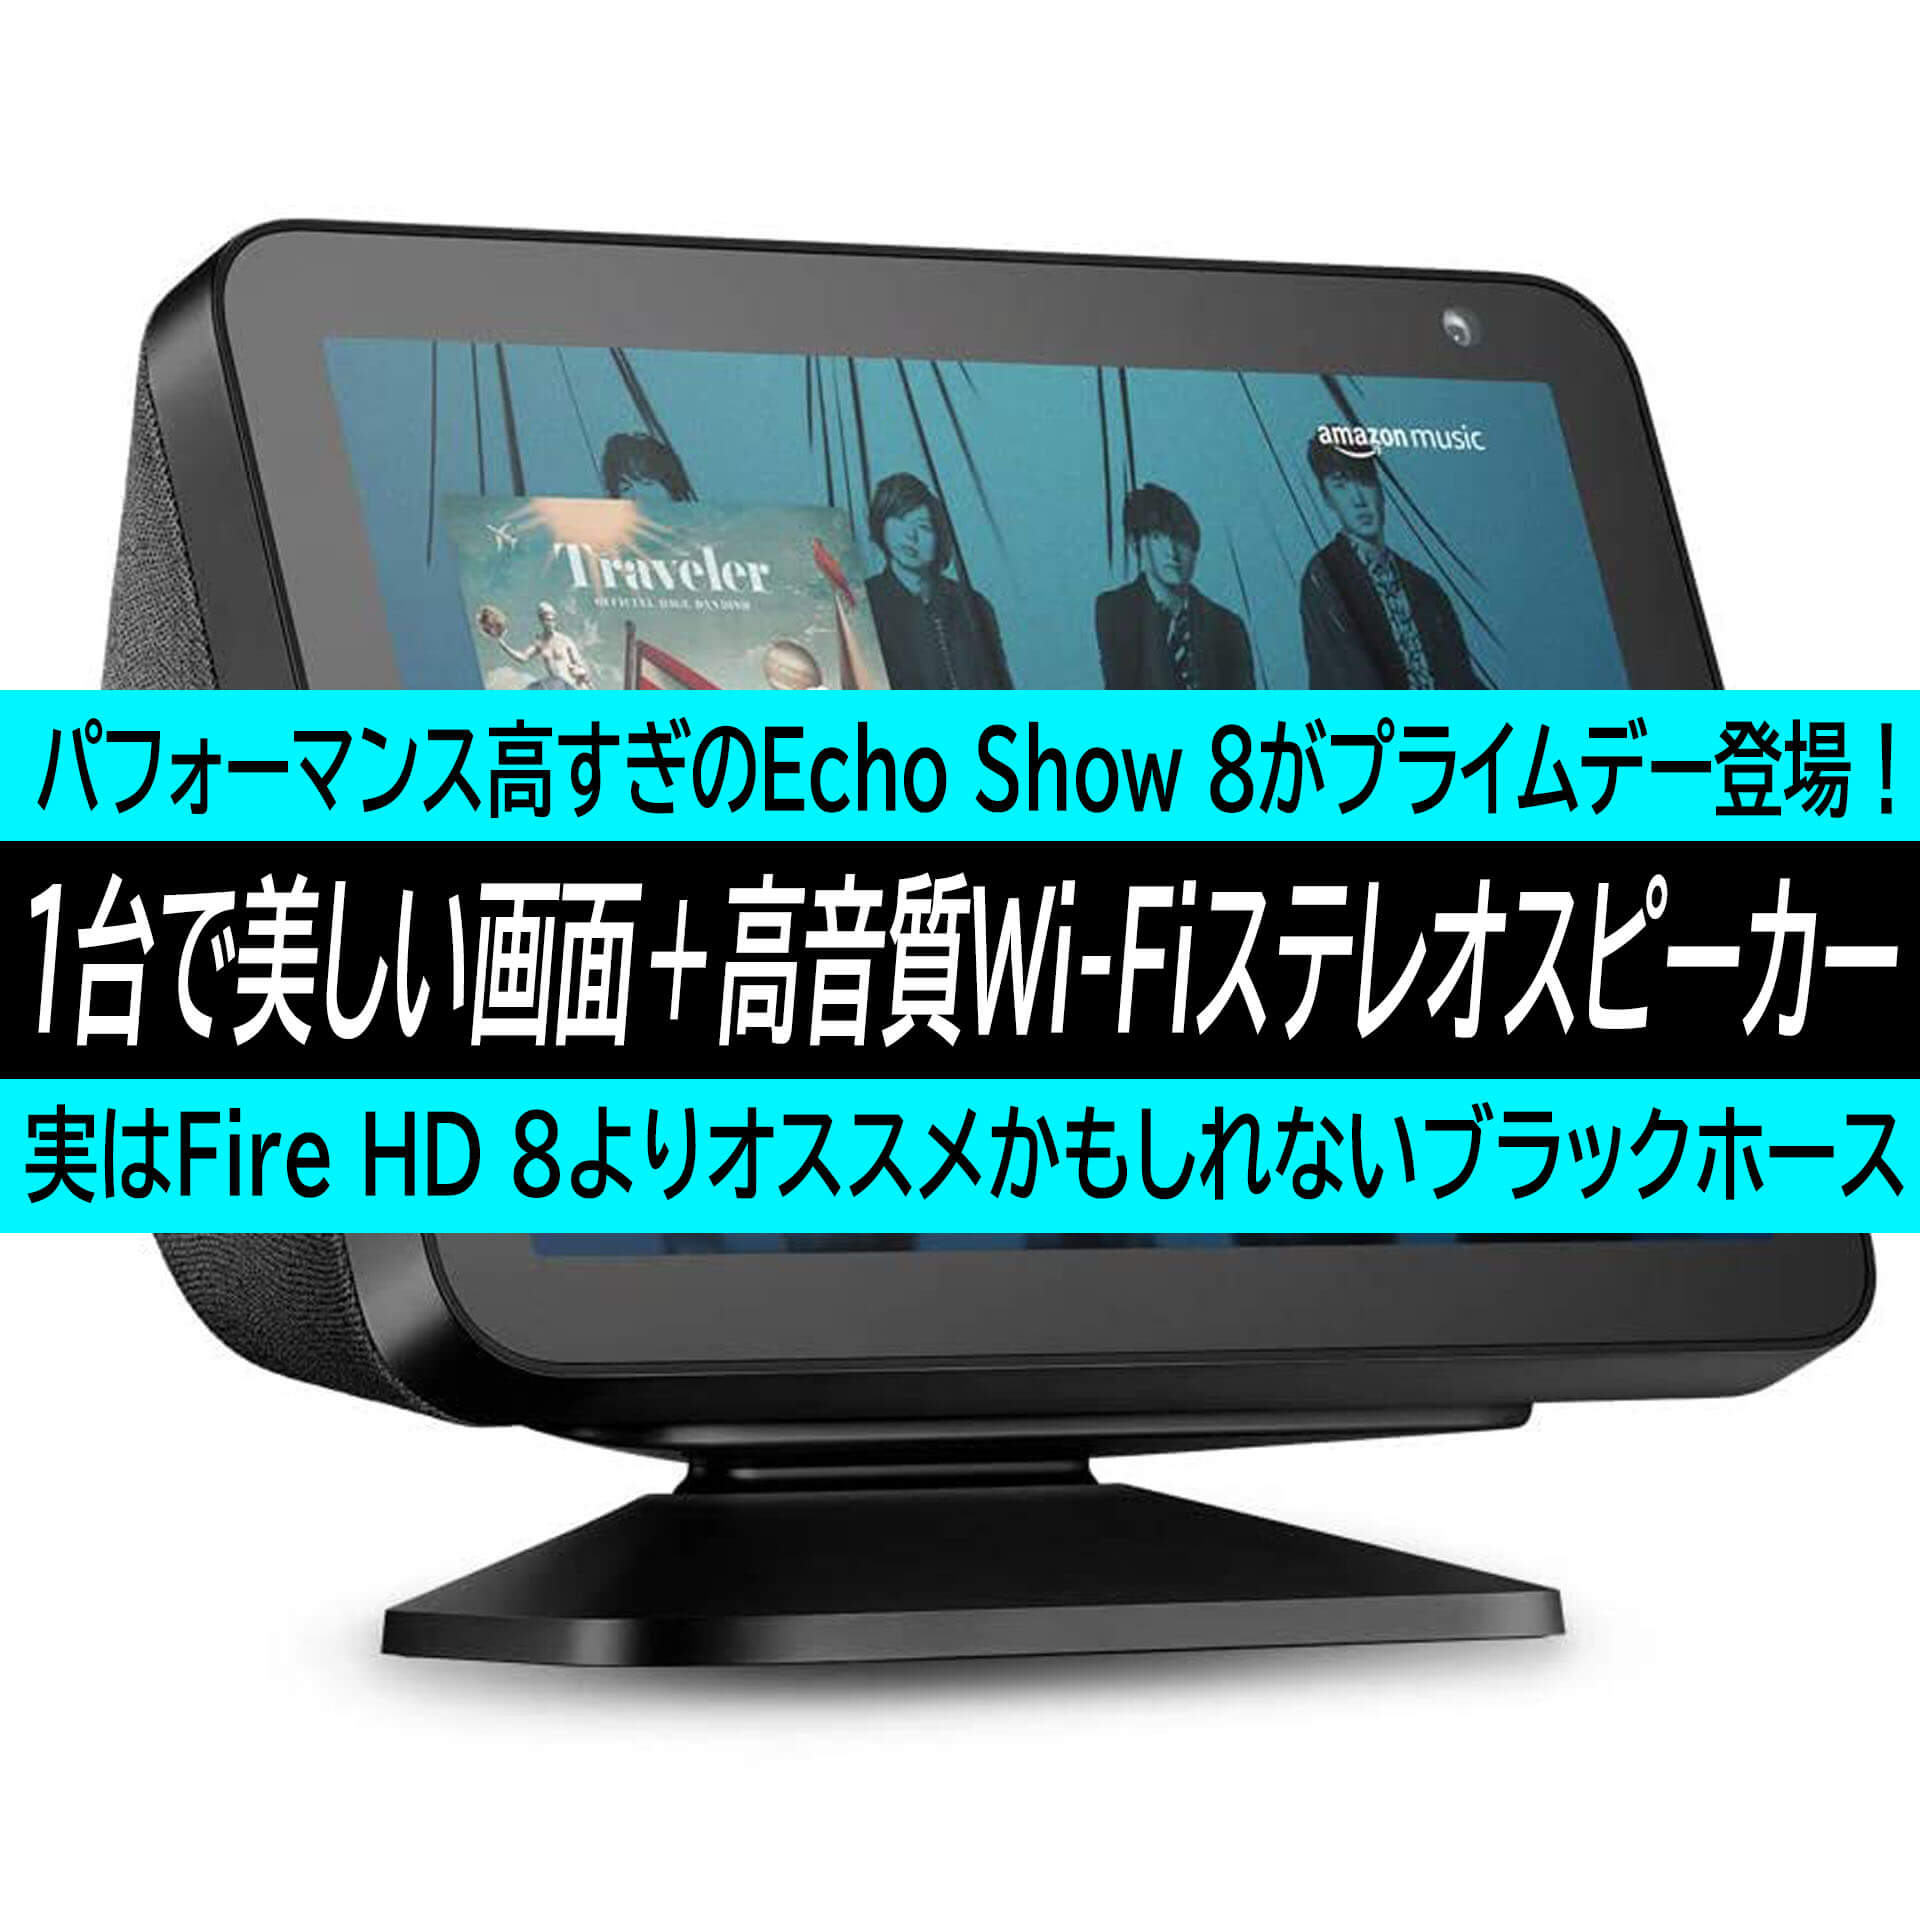 Echo Show 8がamazonプライムデー降臨 美しい大画面と高音質wi Fiステレオスピーカーが同時に手に入る